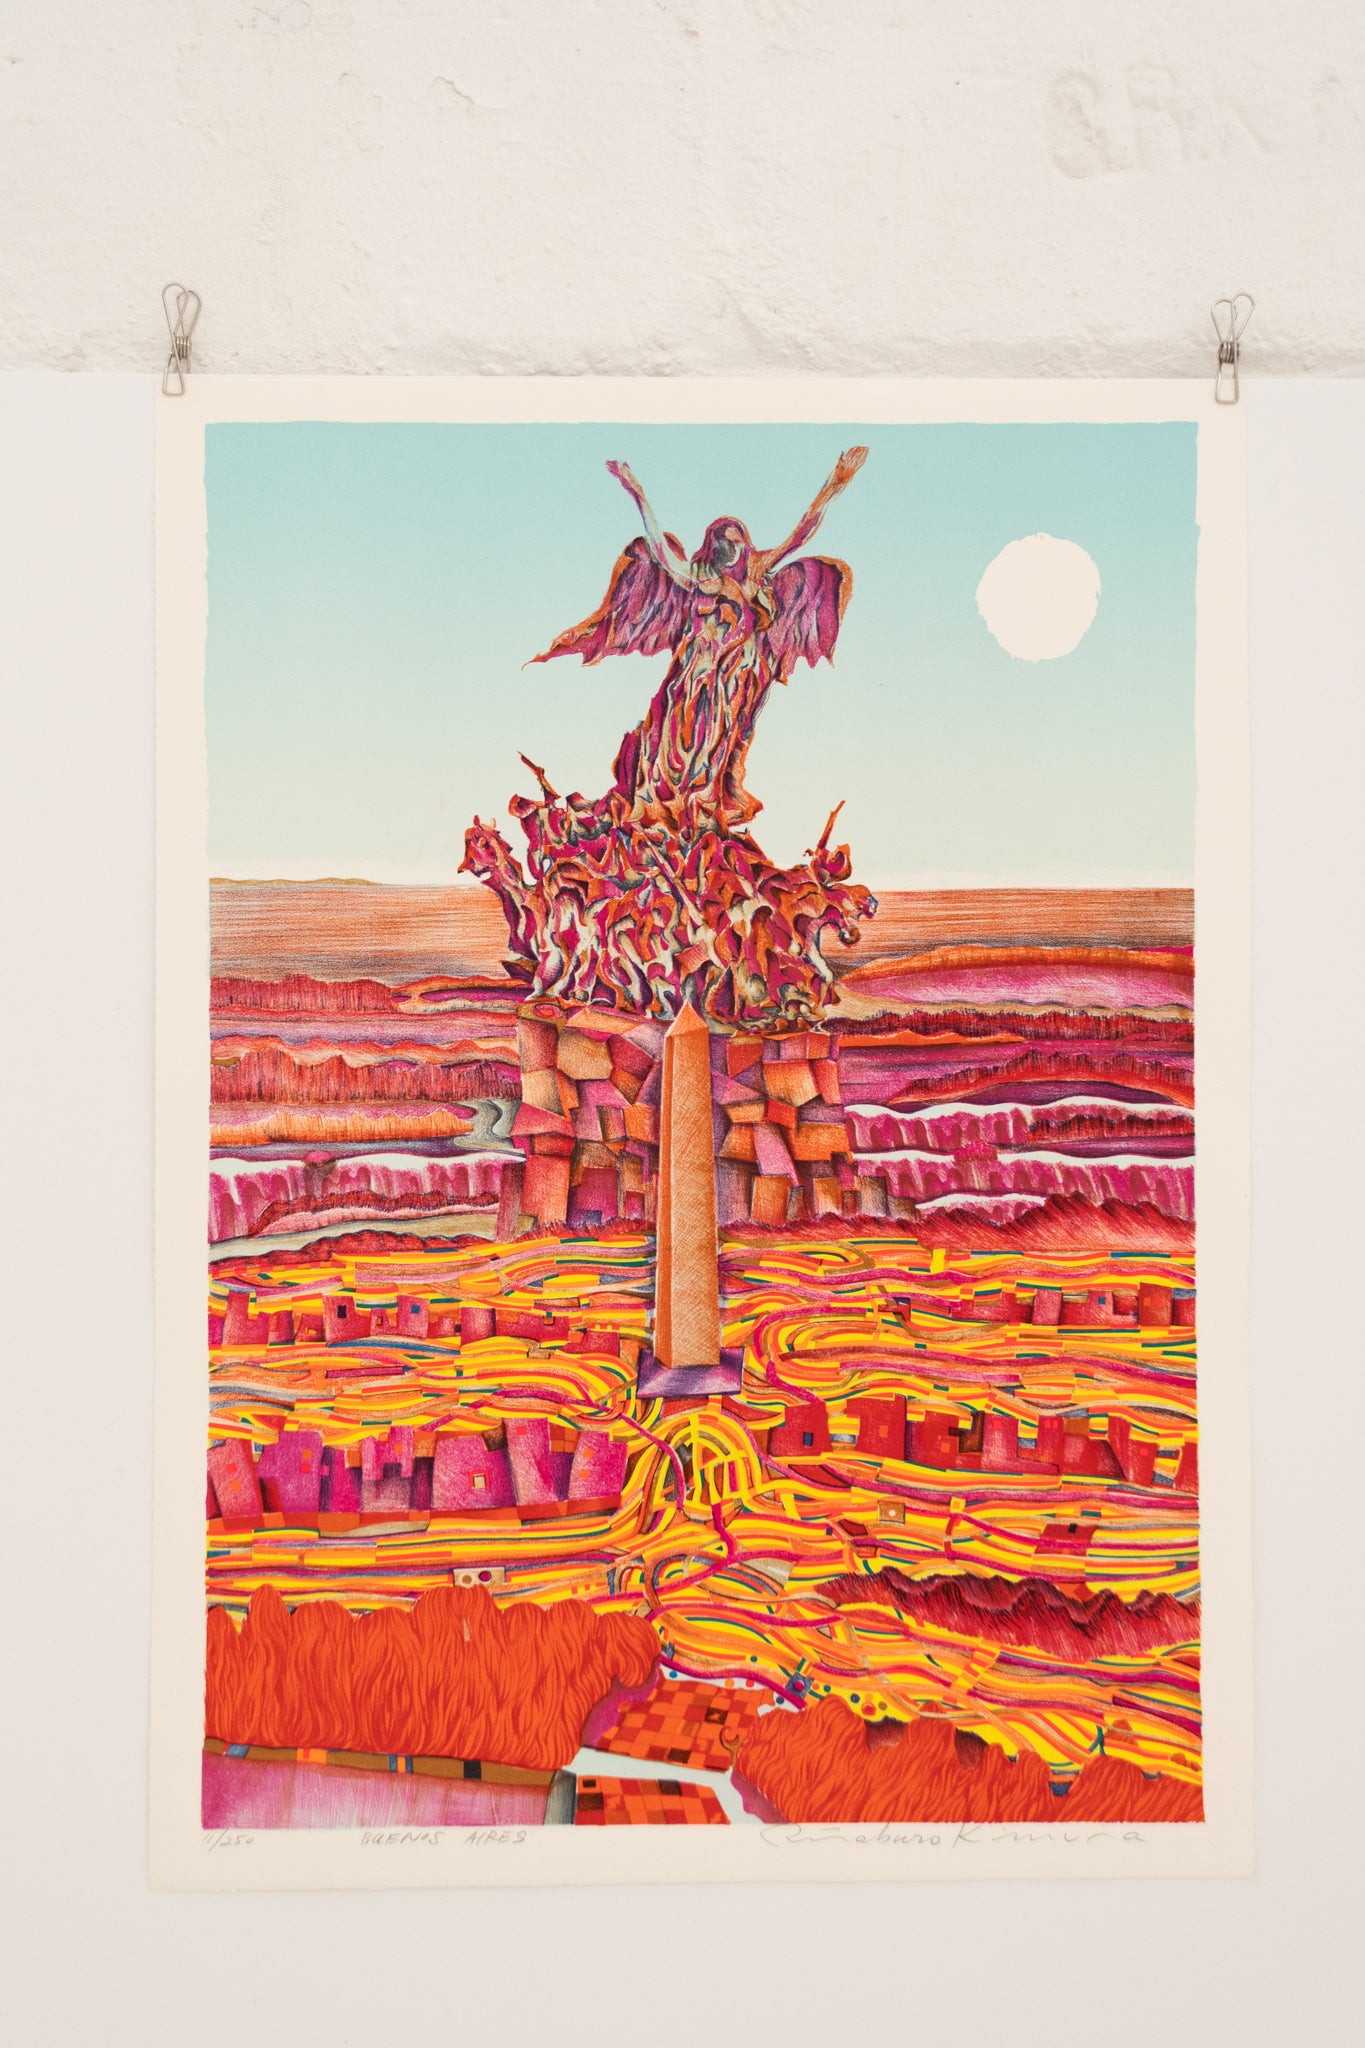 Risaburo Kimura "Buenos Aires" 1973 Silkscreen on BFK Rives Print